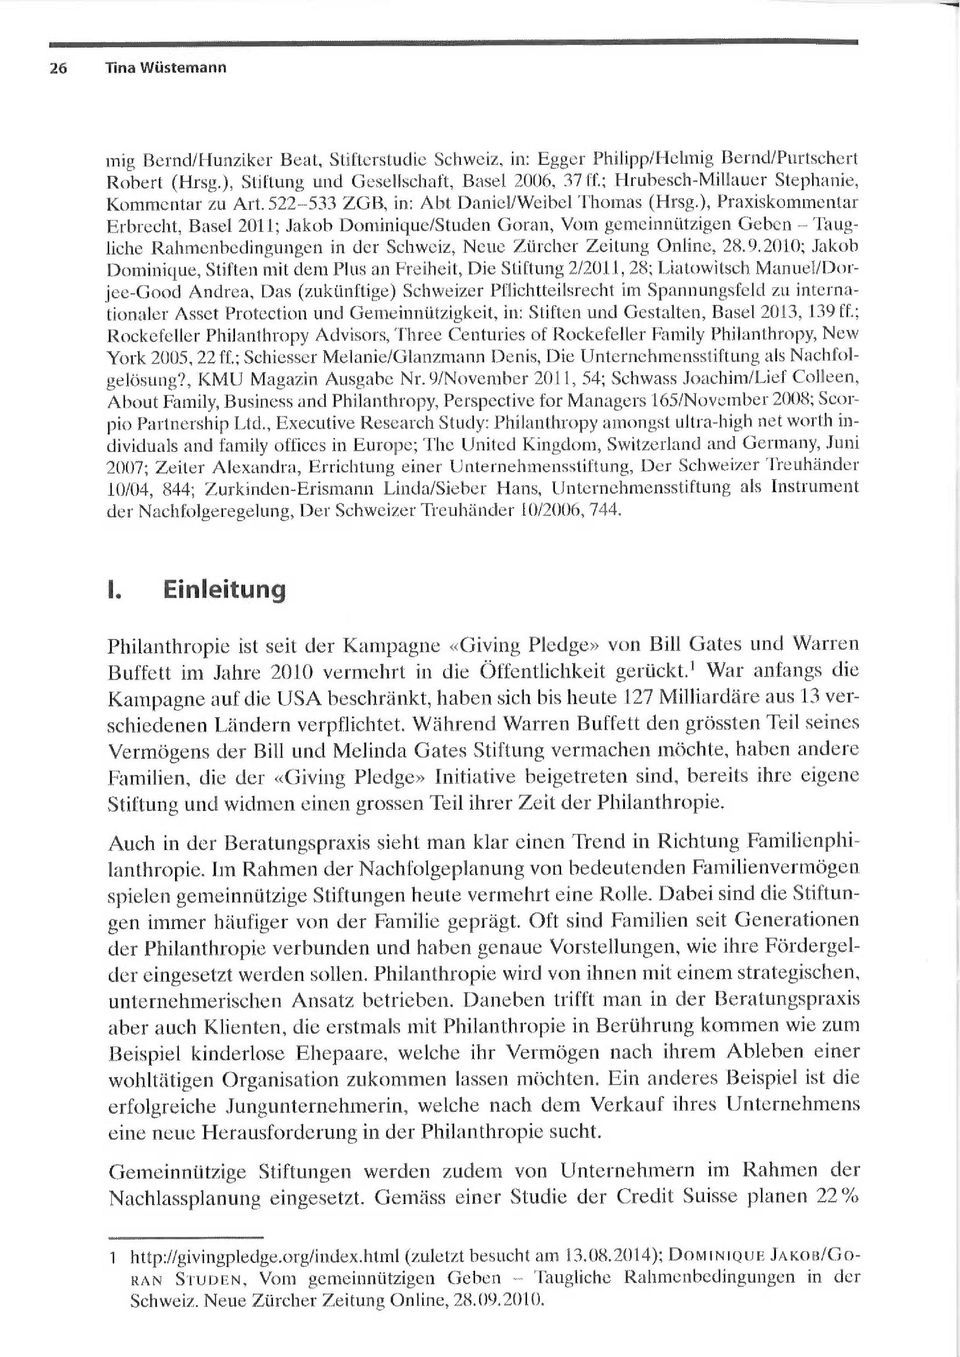 }, Yraxiskomin~;n~ar E~ brecht, Basel 2011; Jakob Dominique/Studen Gora~i, Vom gemeinniitzigen Gebcn T~~ugliche Rahmenbedingungen in der Schweiz, Neue Lürcl~er Zeitung Online, 28.9.